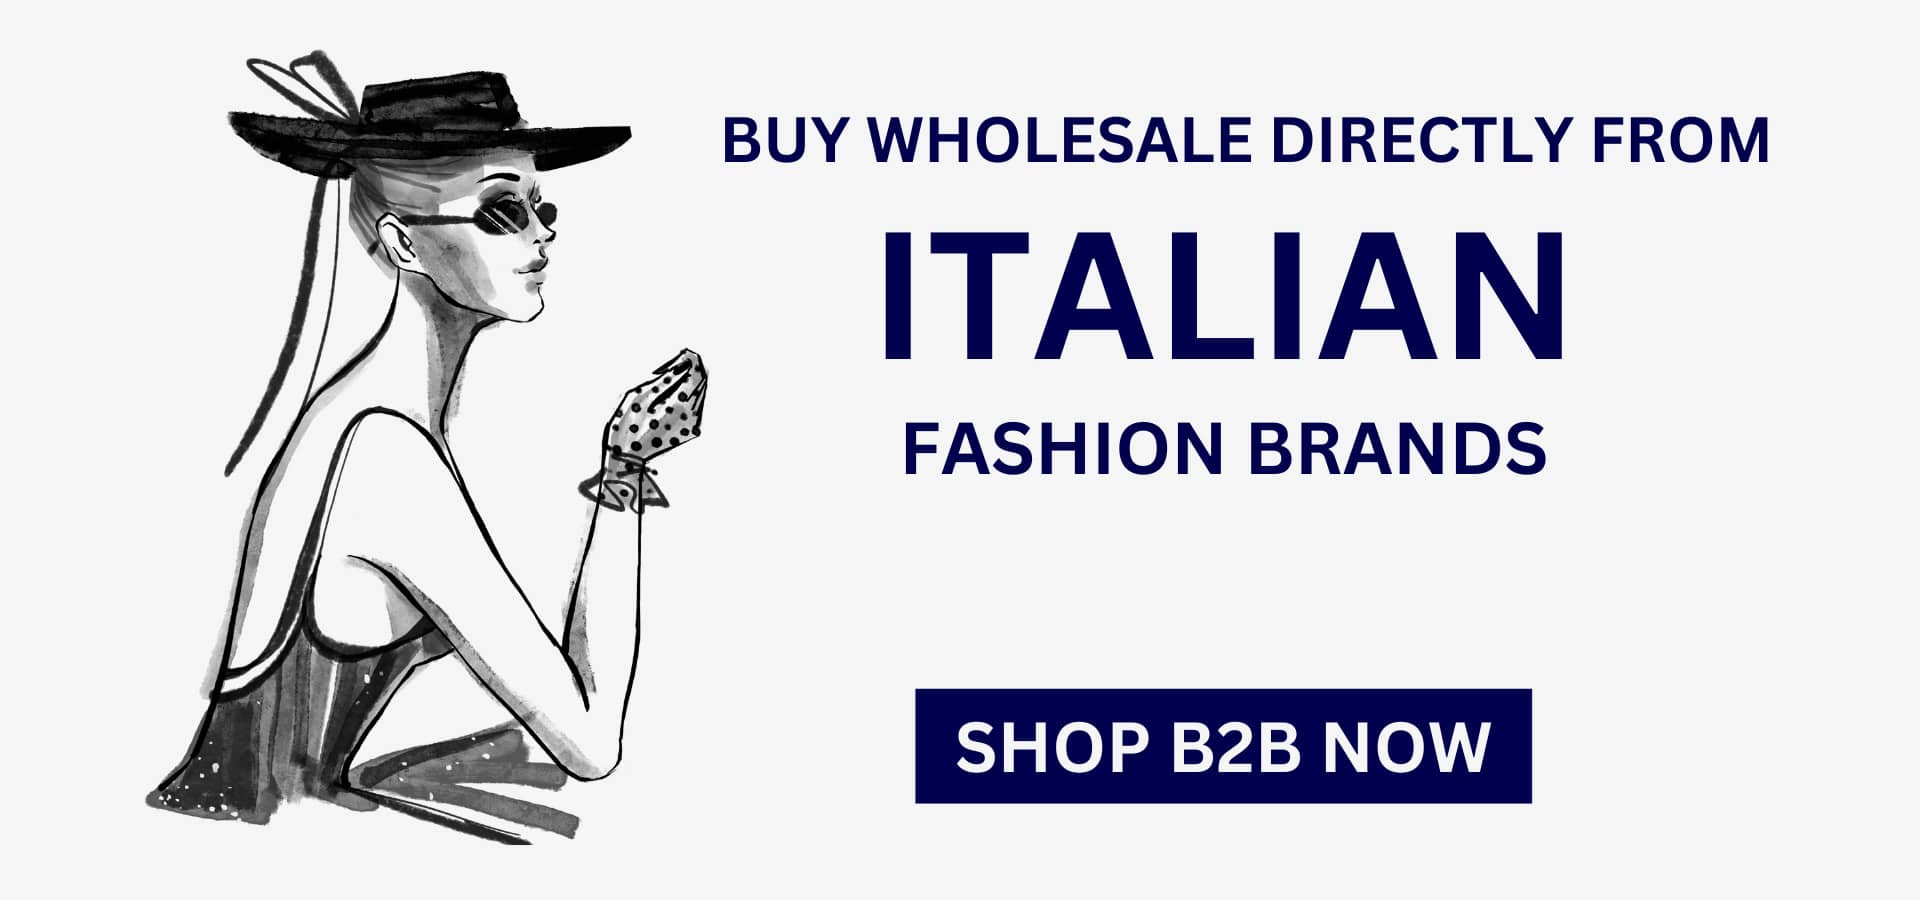 Italian fashion B2B: wholesale clothing shoes handbags accessories